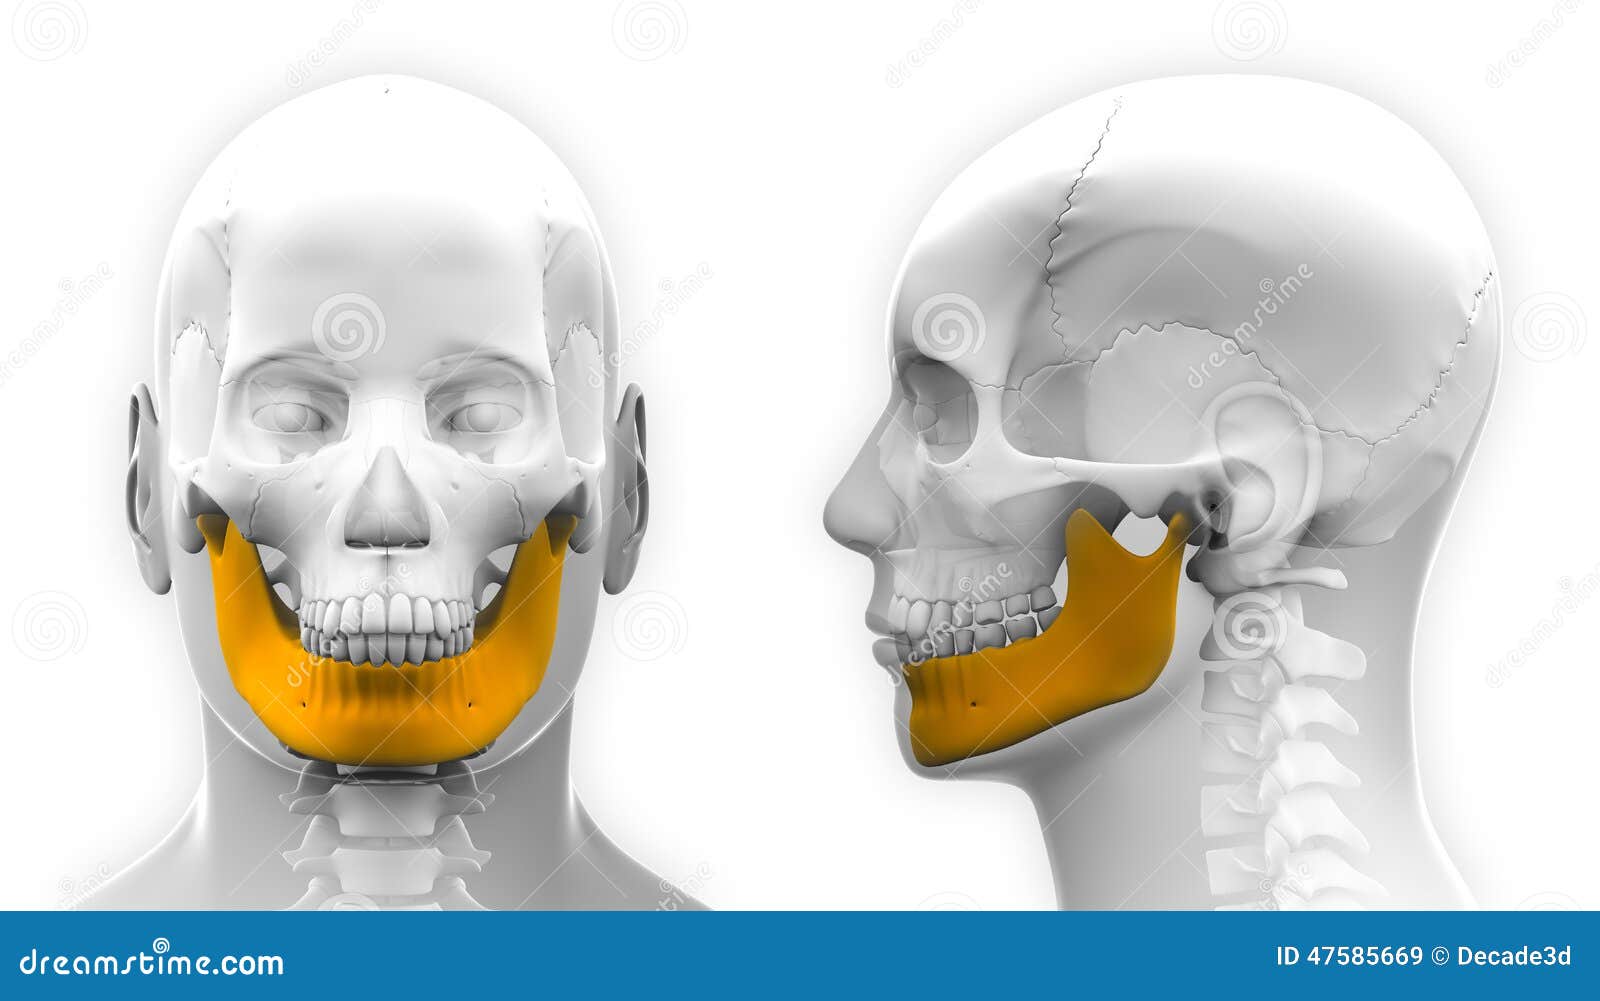 下颌线和下颚线的区别图片